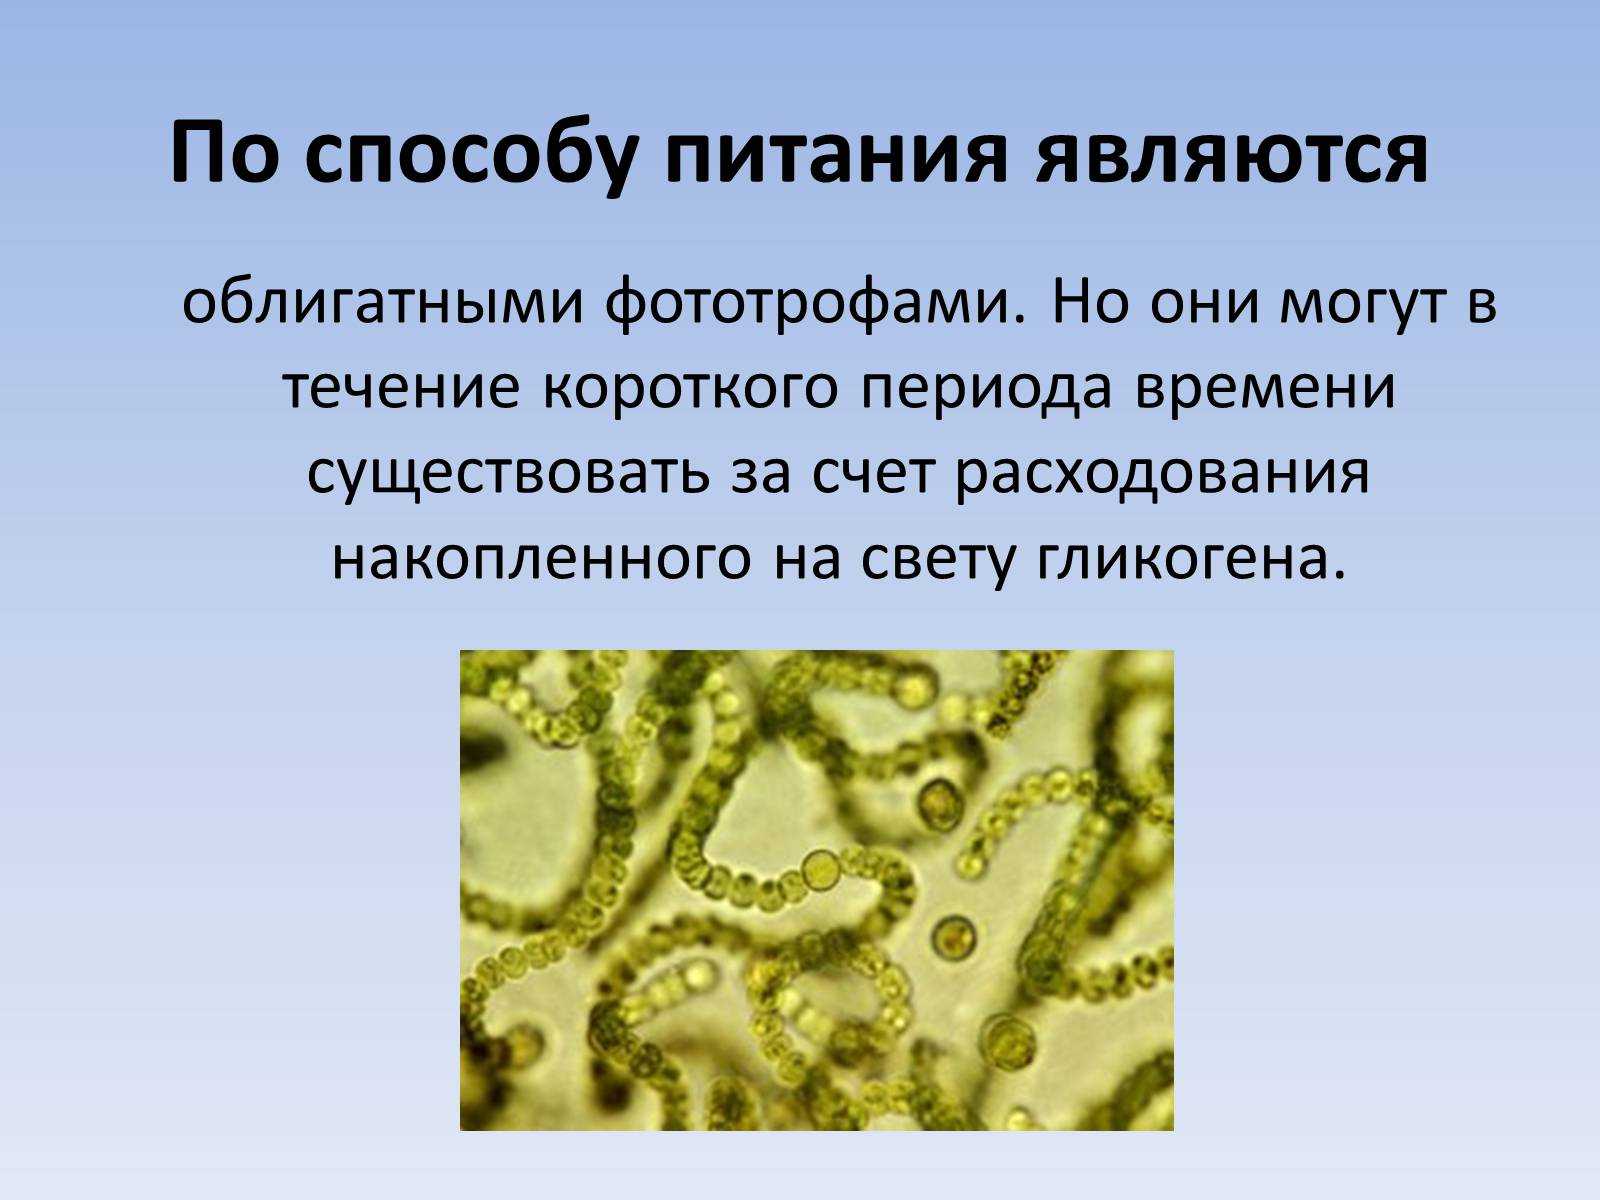 Группы организмов цианобактерии. Прокариотические цианобактерии. Цианобактерии (синезелёные). Цианобактерии бациллы. Синезеленые водоросли цианобактерии.